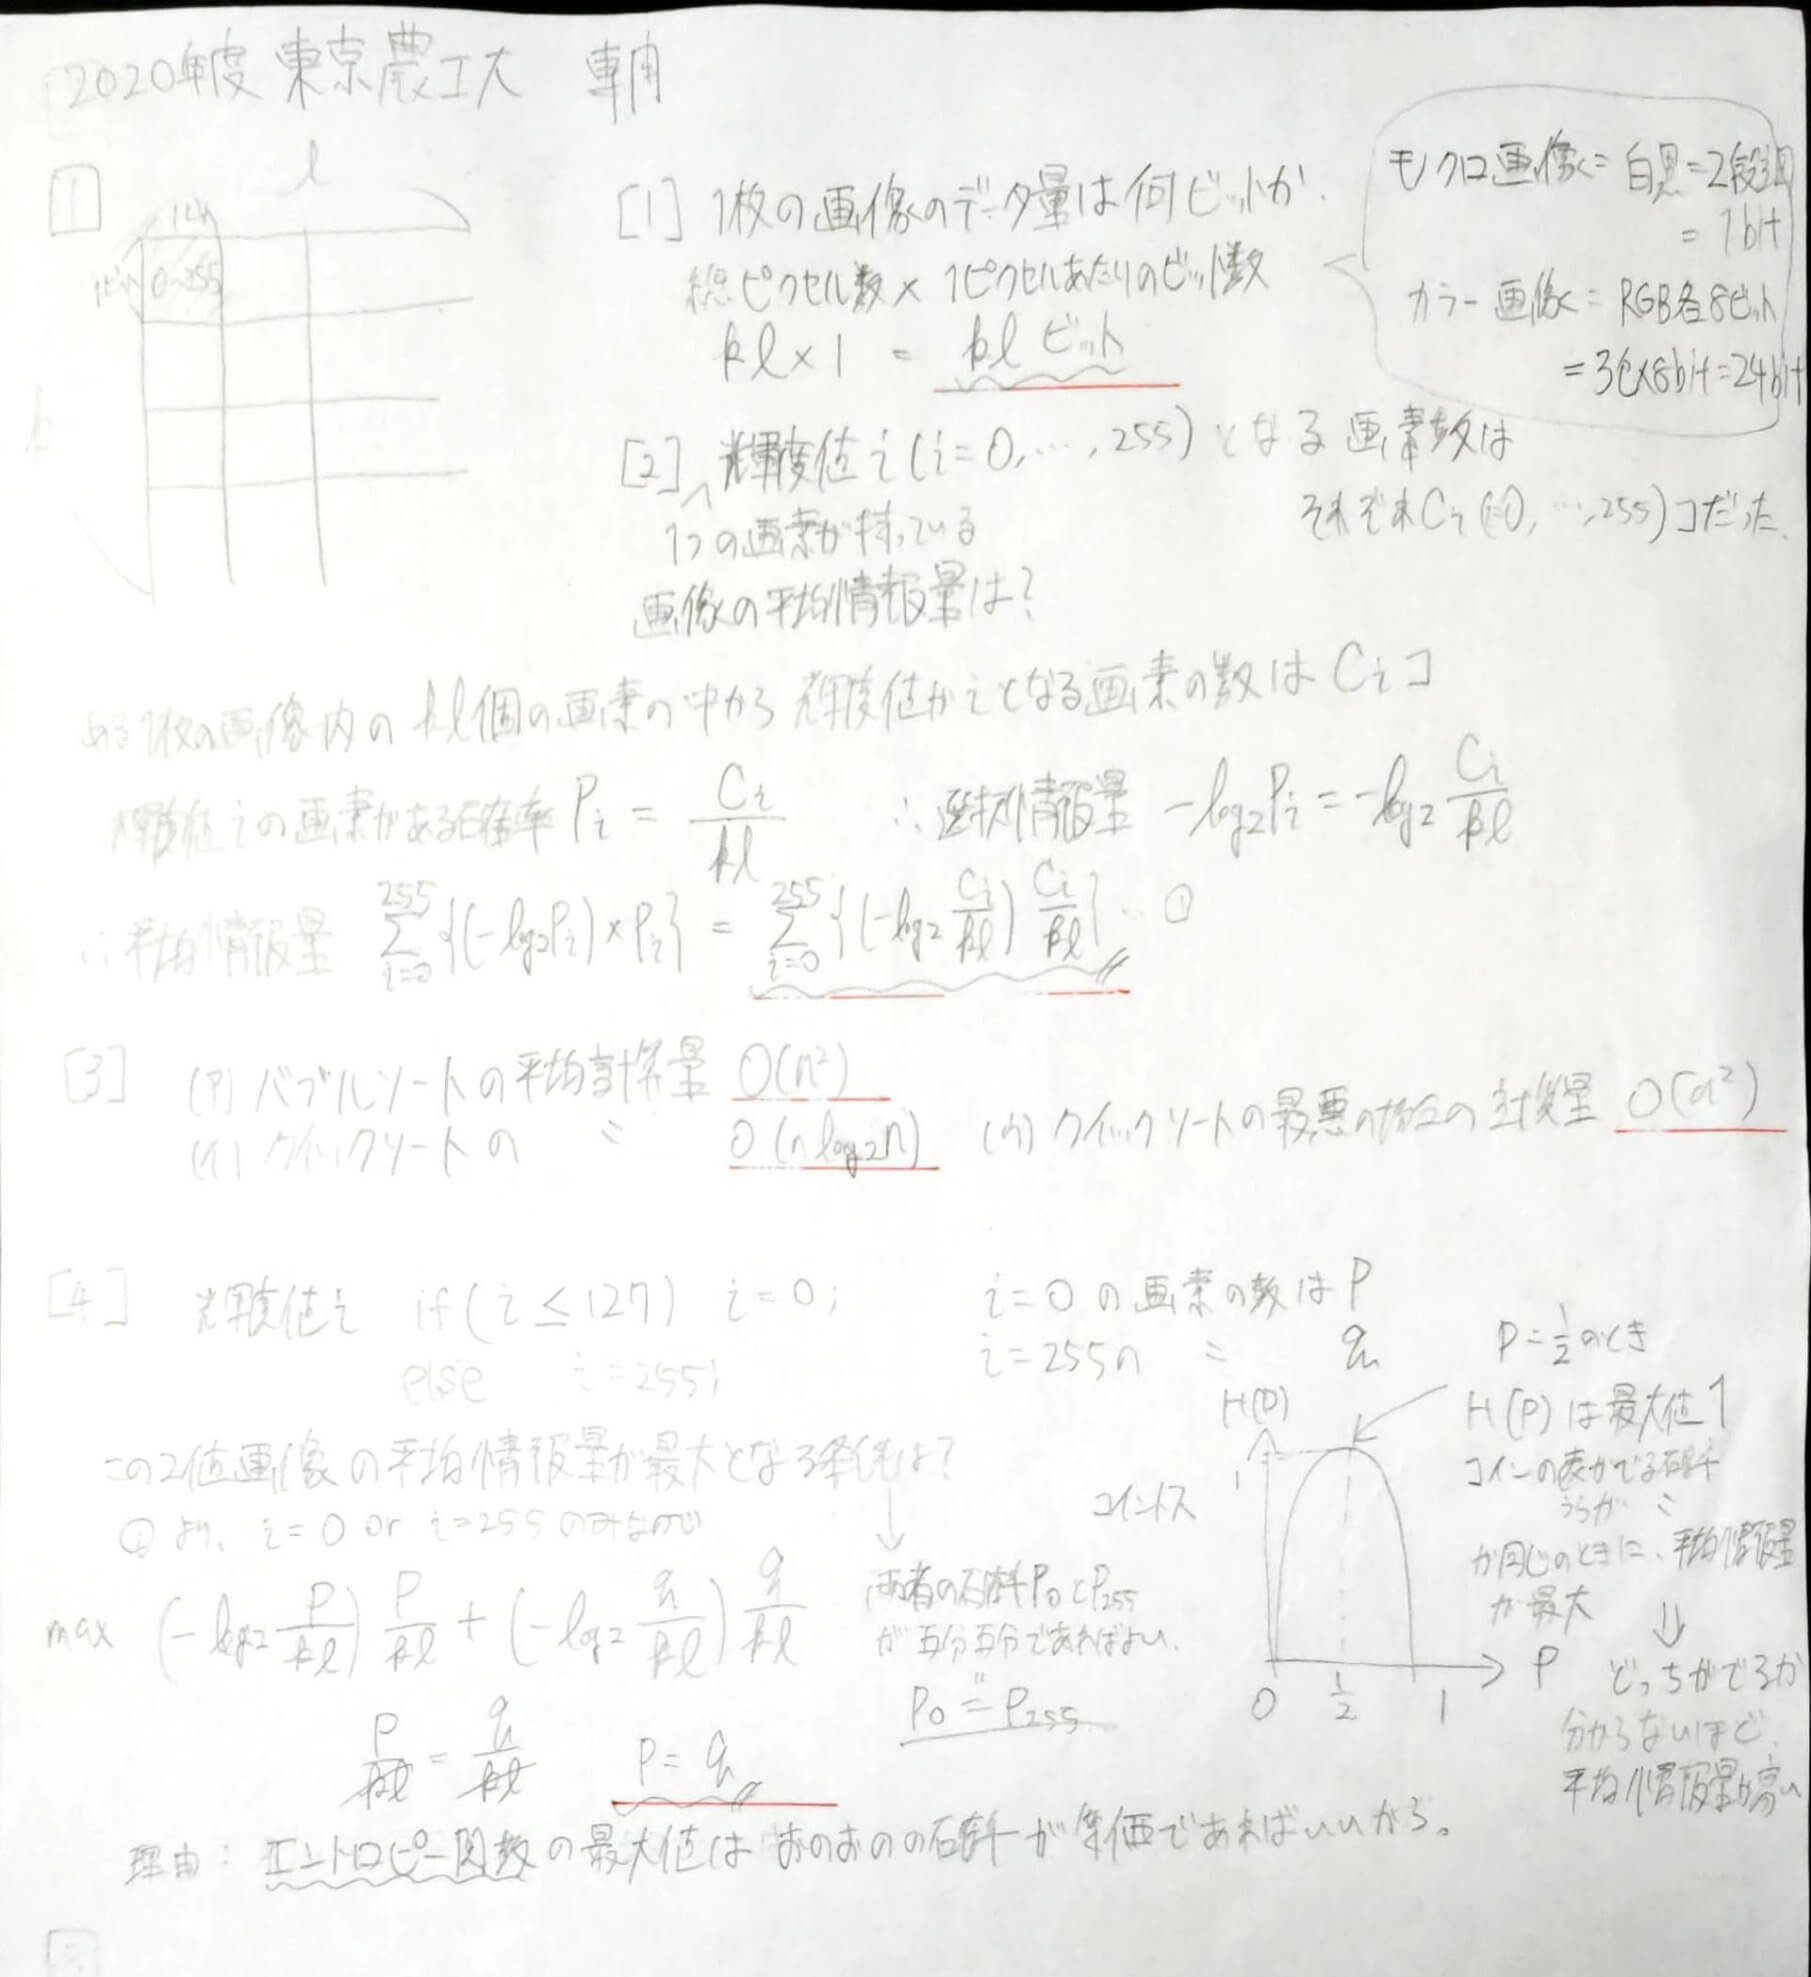 東京農工大編入試験過去問16年分(物理) - 本